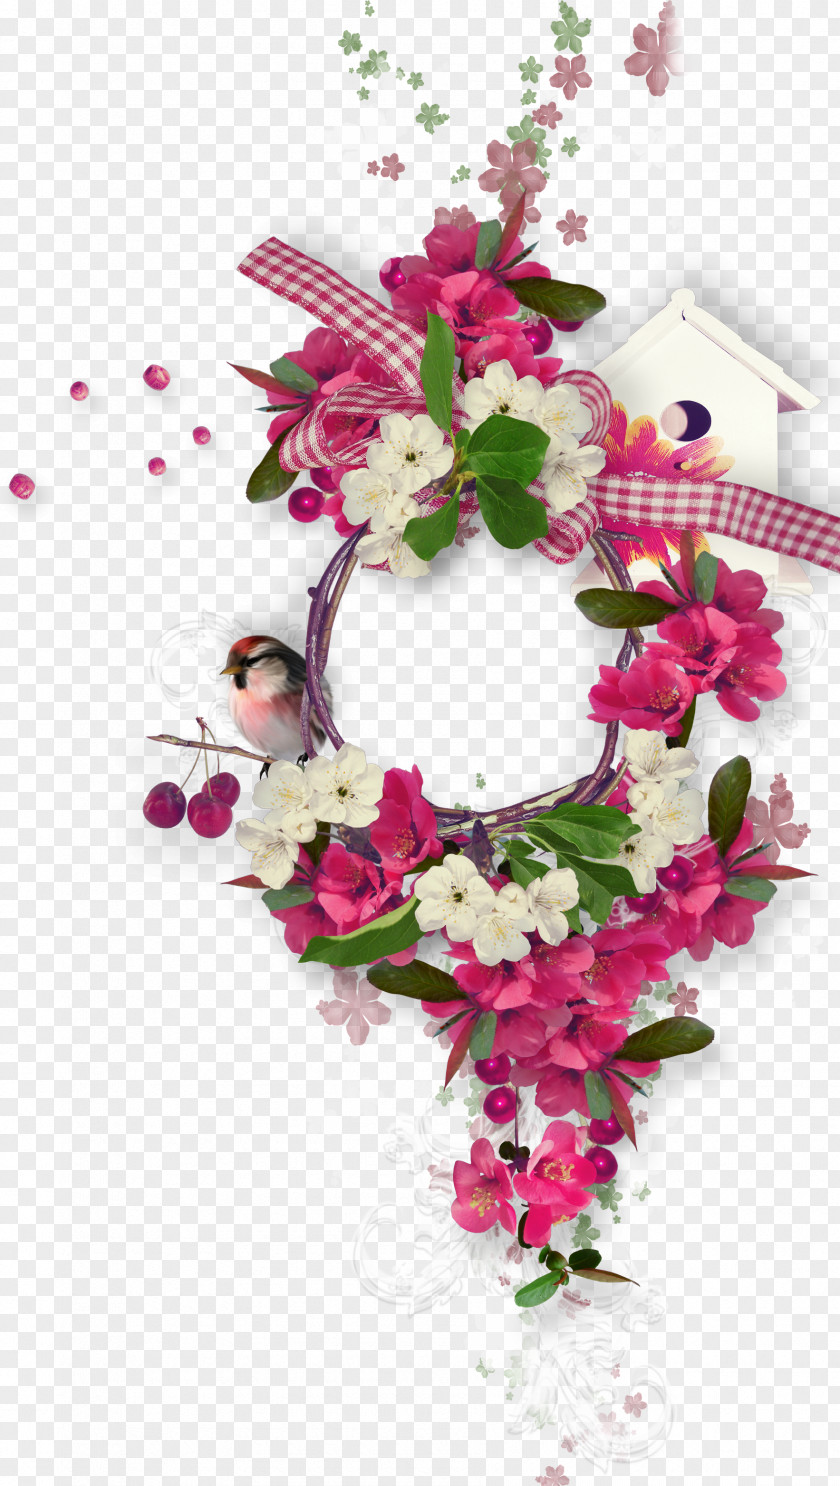 Pearls Flower Floral Design Desktop Wallpaper Picture Frames Clip Art PNG